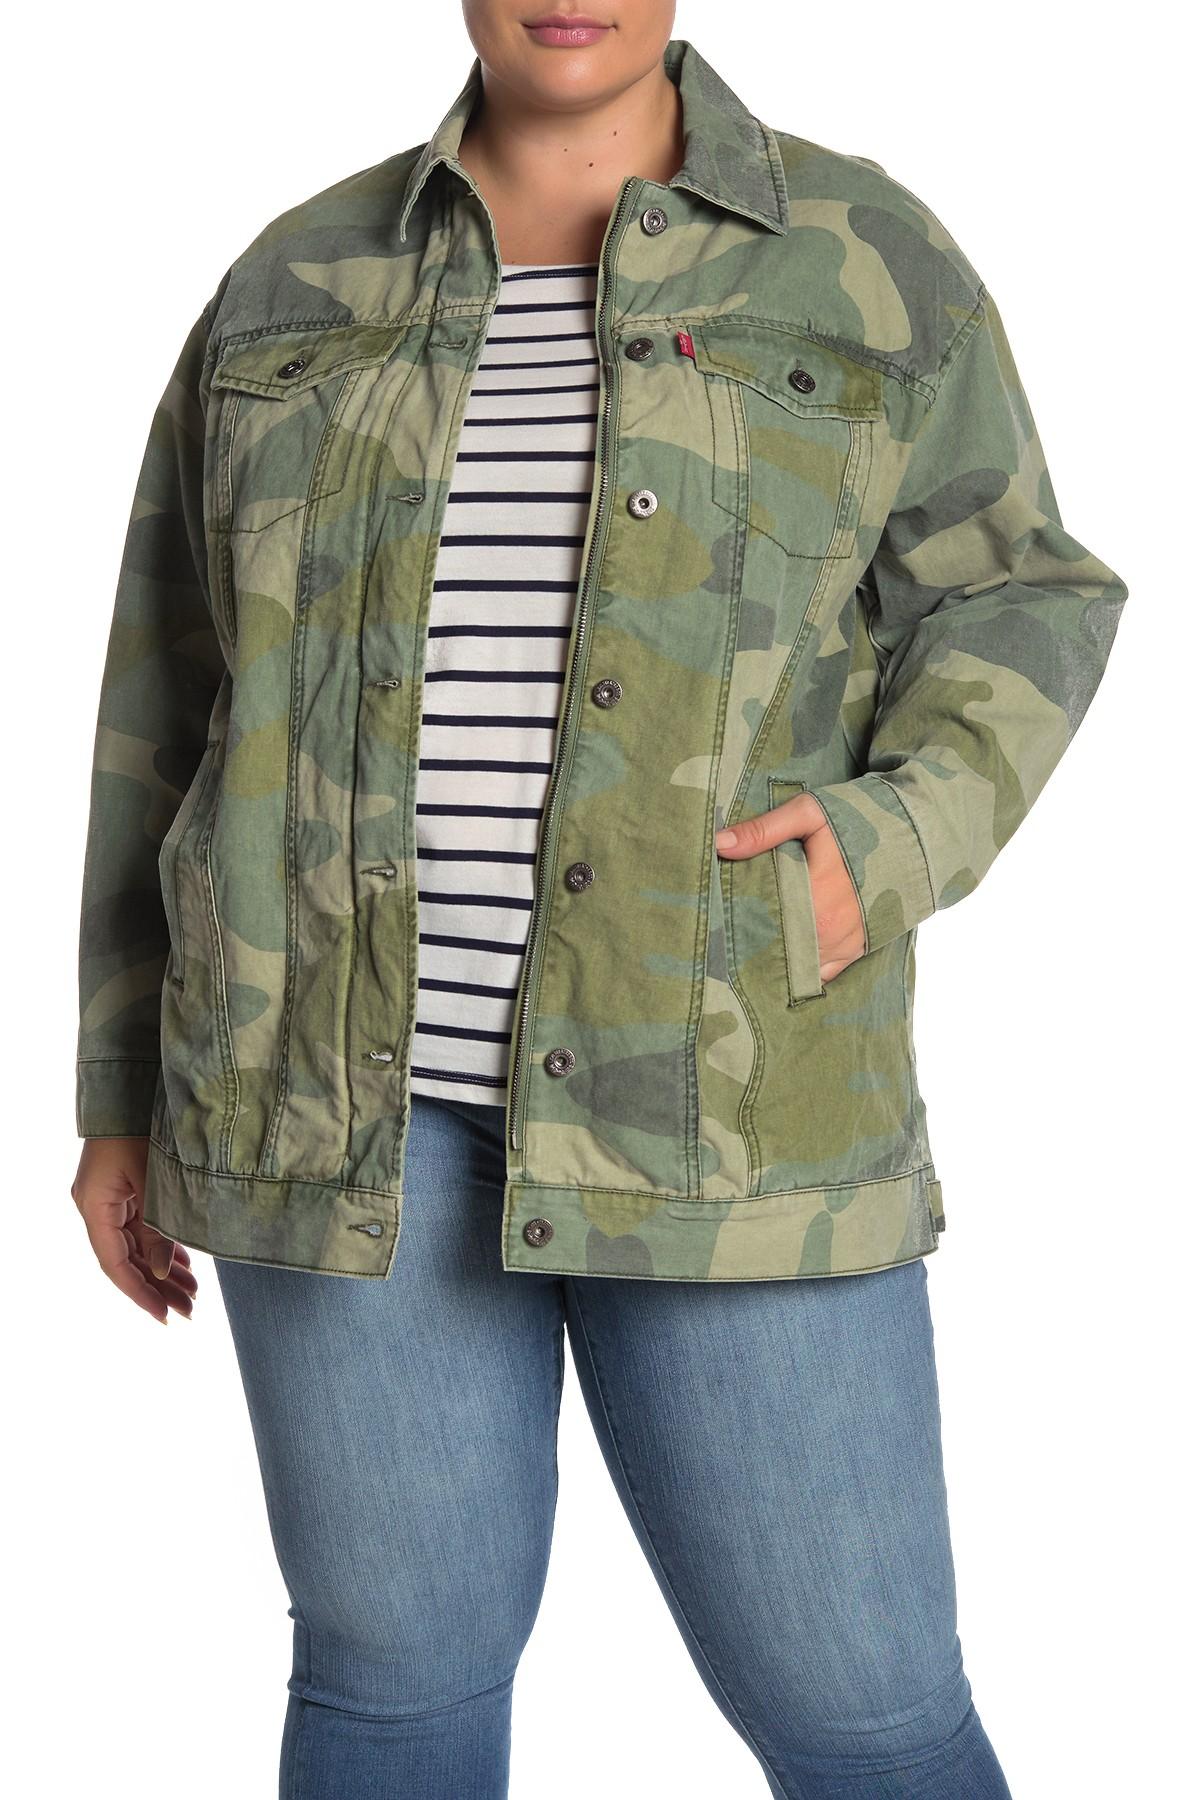 Huiwa Womens Denim Jacket Plus Size Lightweight Camouflage Jacket Military 